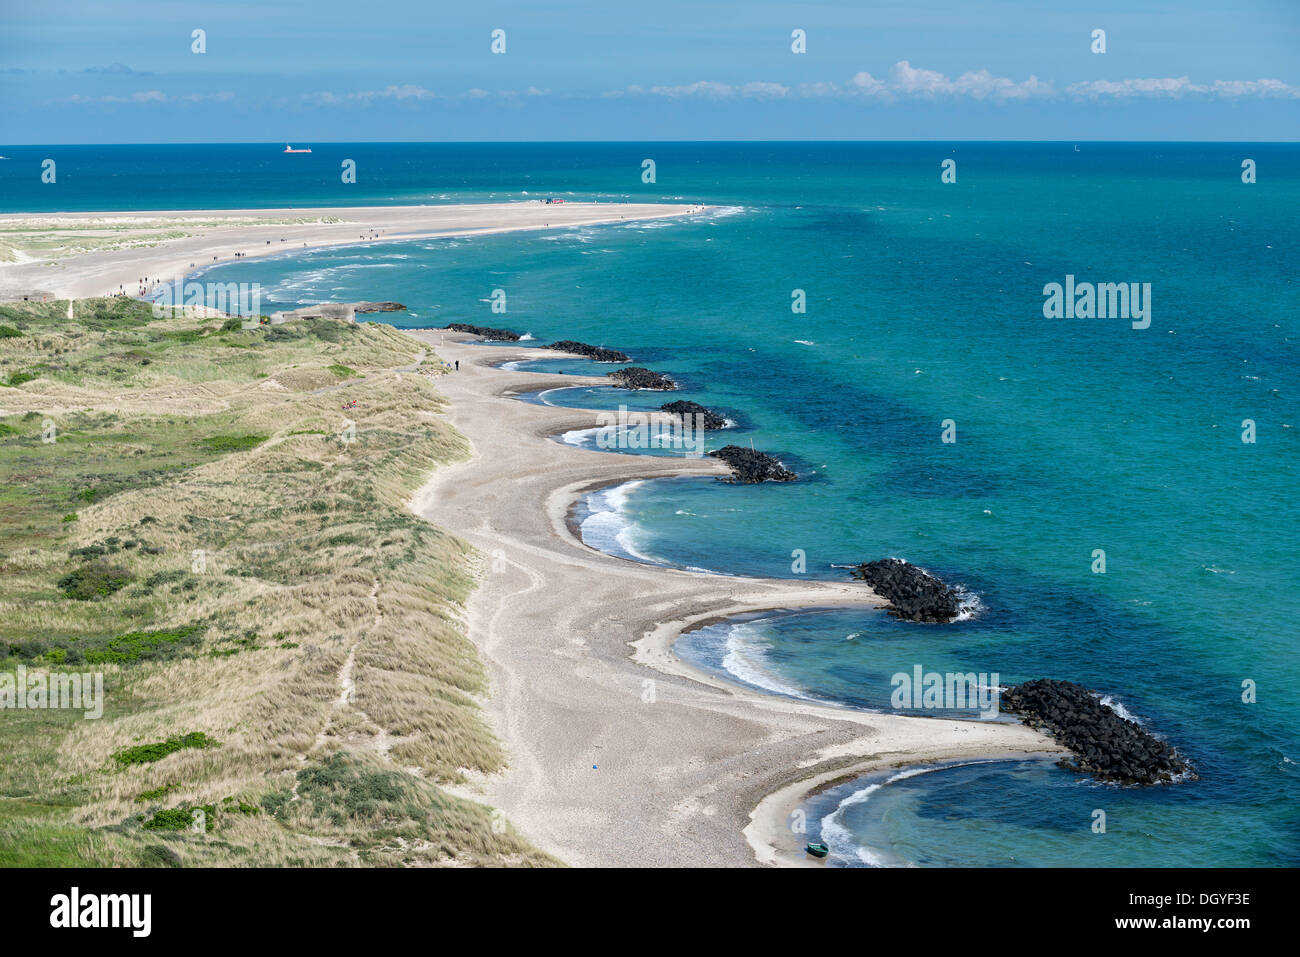 Wellenbrecher, Landzunge, Besprechung von der Nordsee und der Ostsee, Skagen, Grenen, Jütland, Dänemark Stockfoto